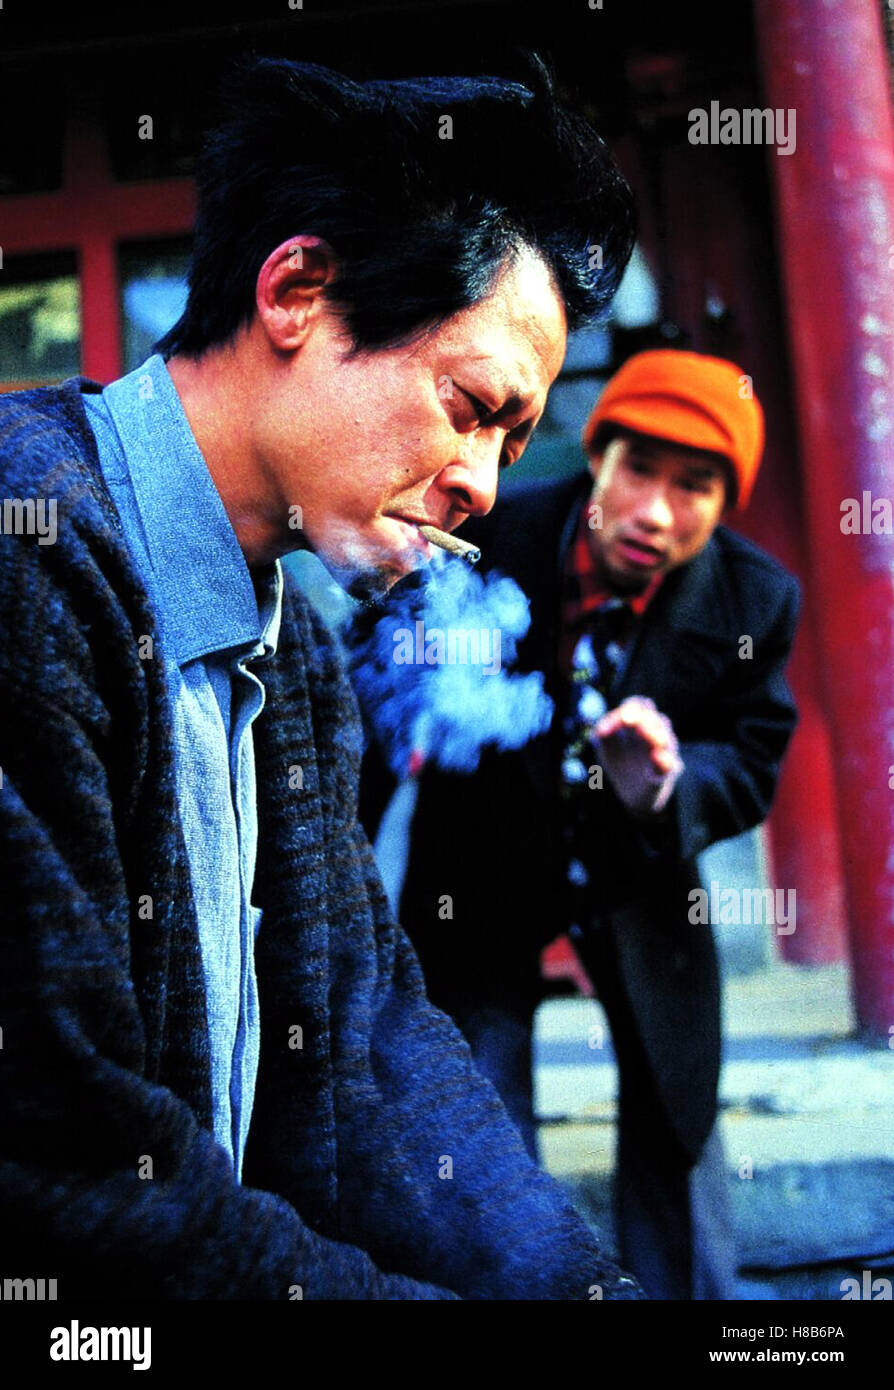 Xiaos Weg, (TOGETHER/HE NI ZAI YI QI) CHI-South Korea 2002, Regie: Chen Kaige, WANG ZHIWEN, LIU PEIQI, Key: Zigarette, Rauch Stock Photo